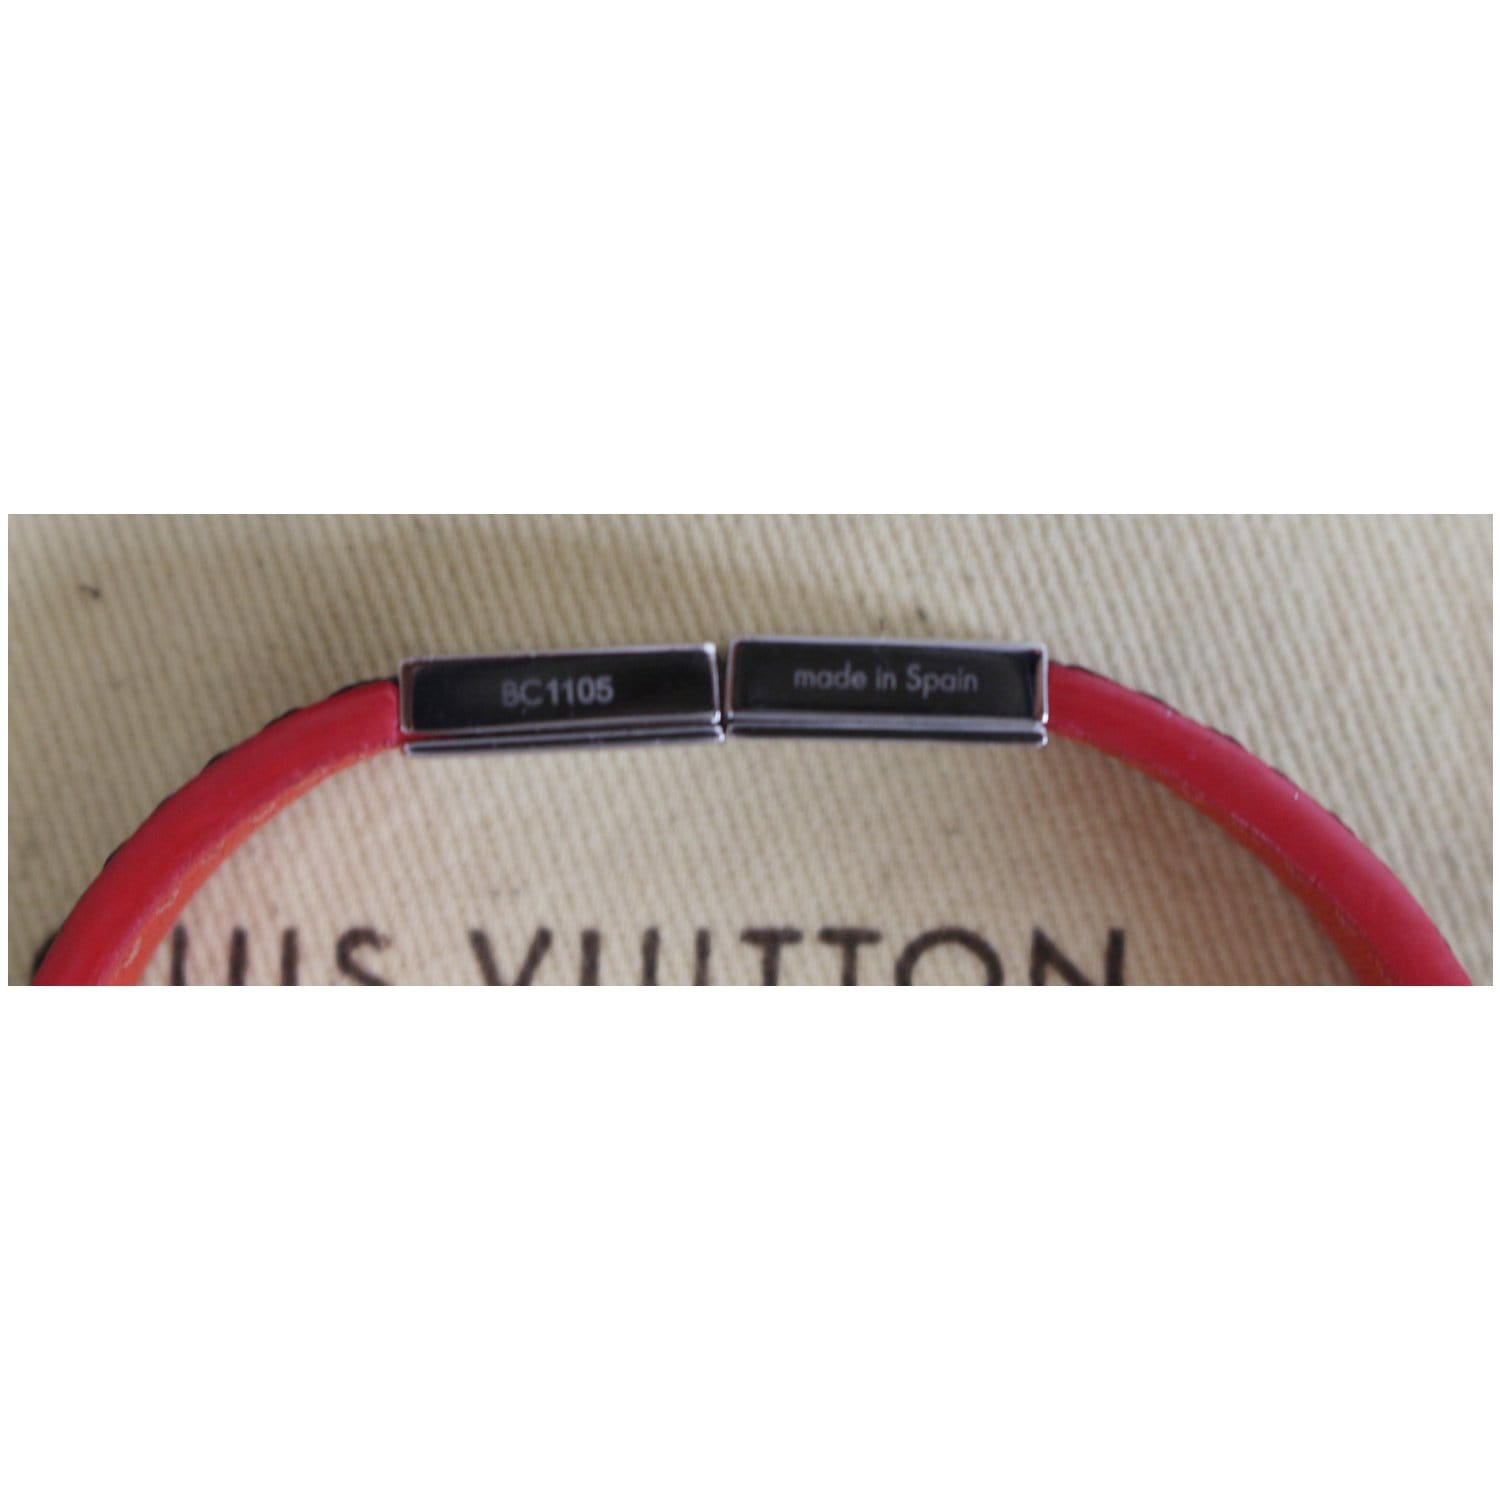 Louis Vuitton Keep It Bracelet Graphite Damier Canvas. Size 19